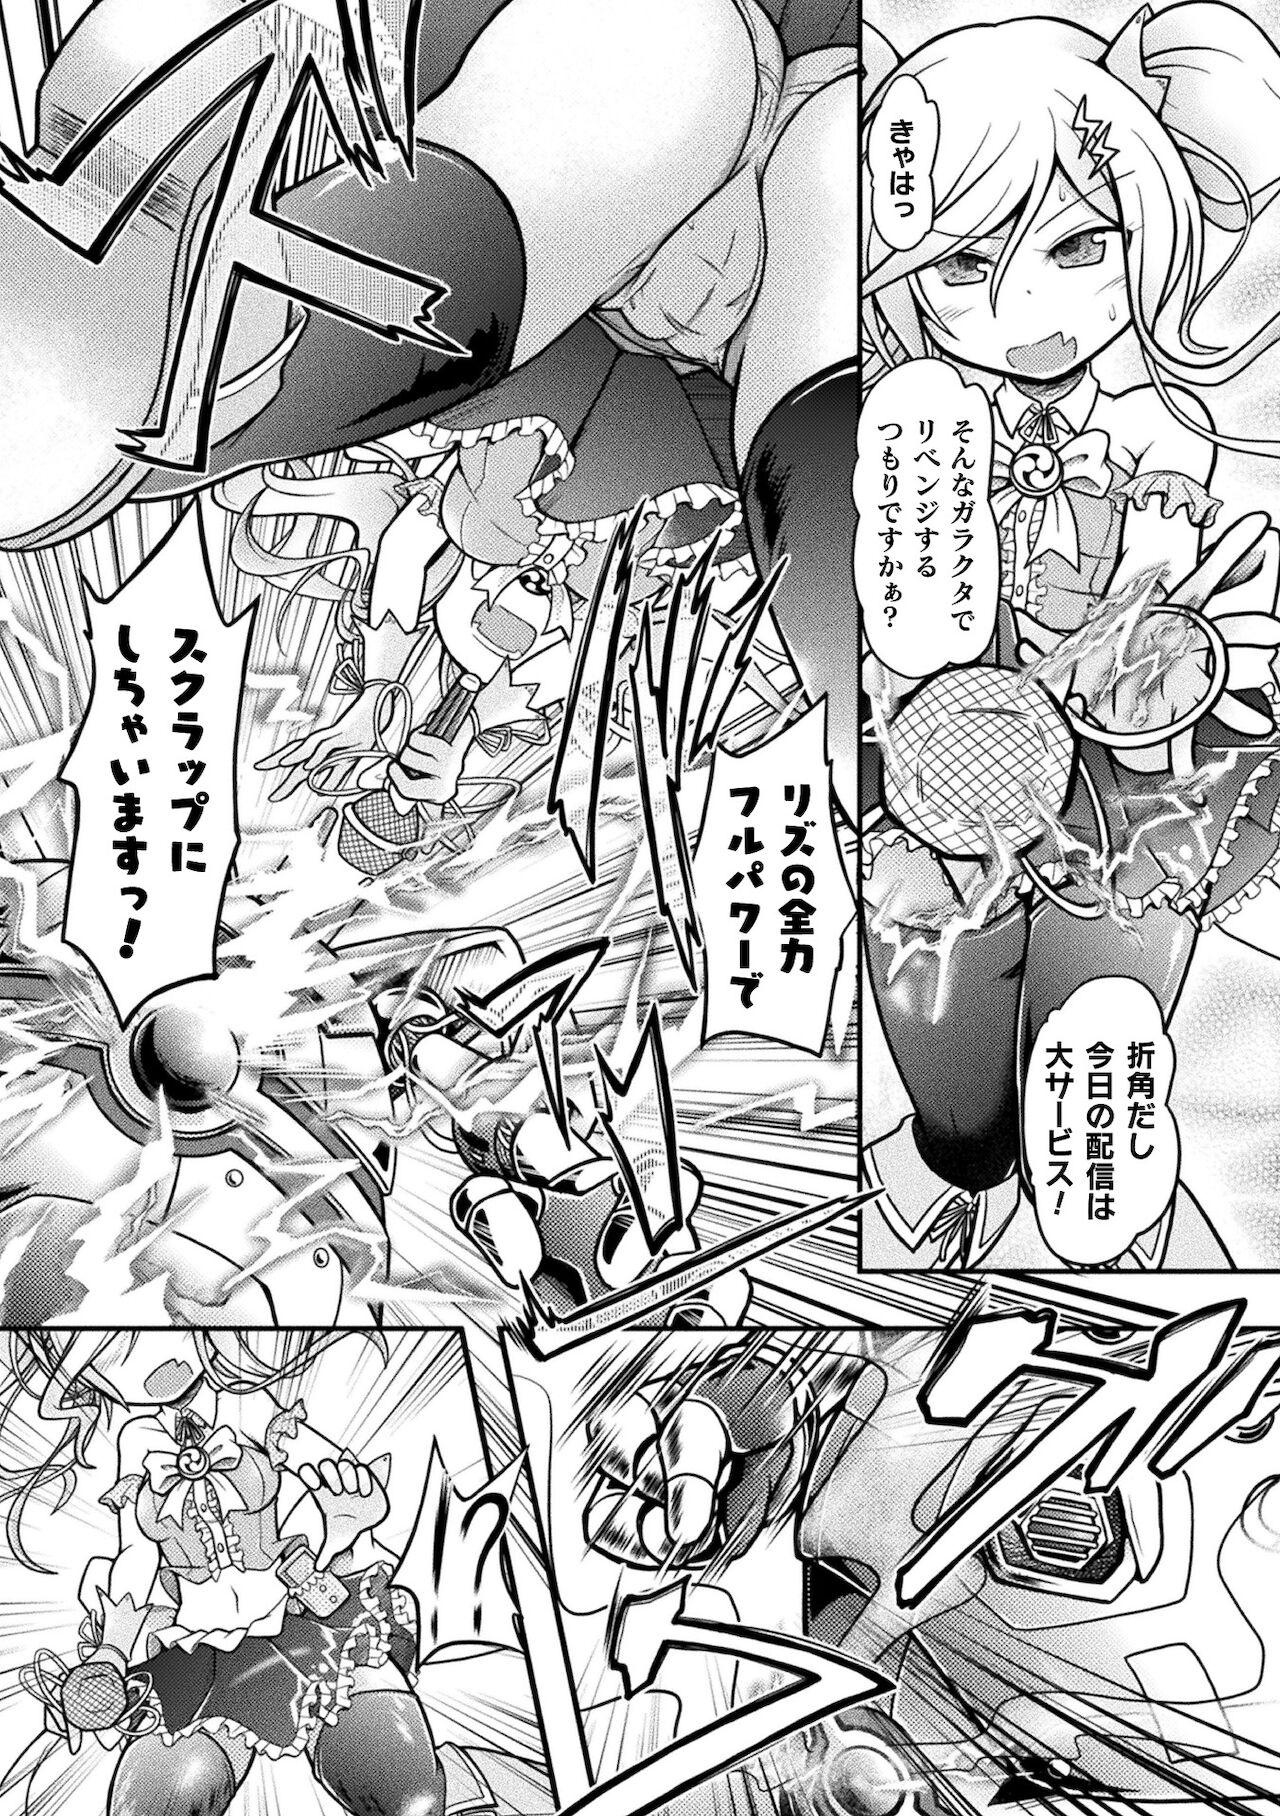 2D Comic Magazine Mesugaki Henshin Heroine Kikaikan Seisai Hijou no Wakarase Machine de Renzoku Loli Acme Vol. 2 26